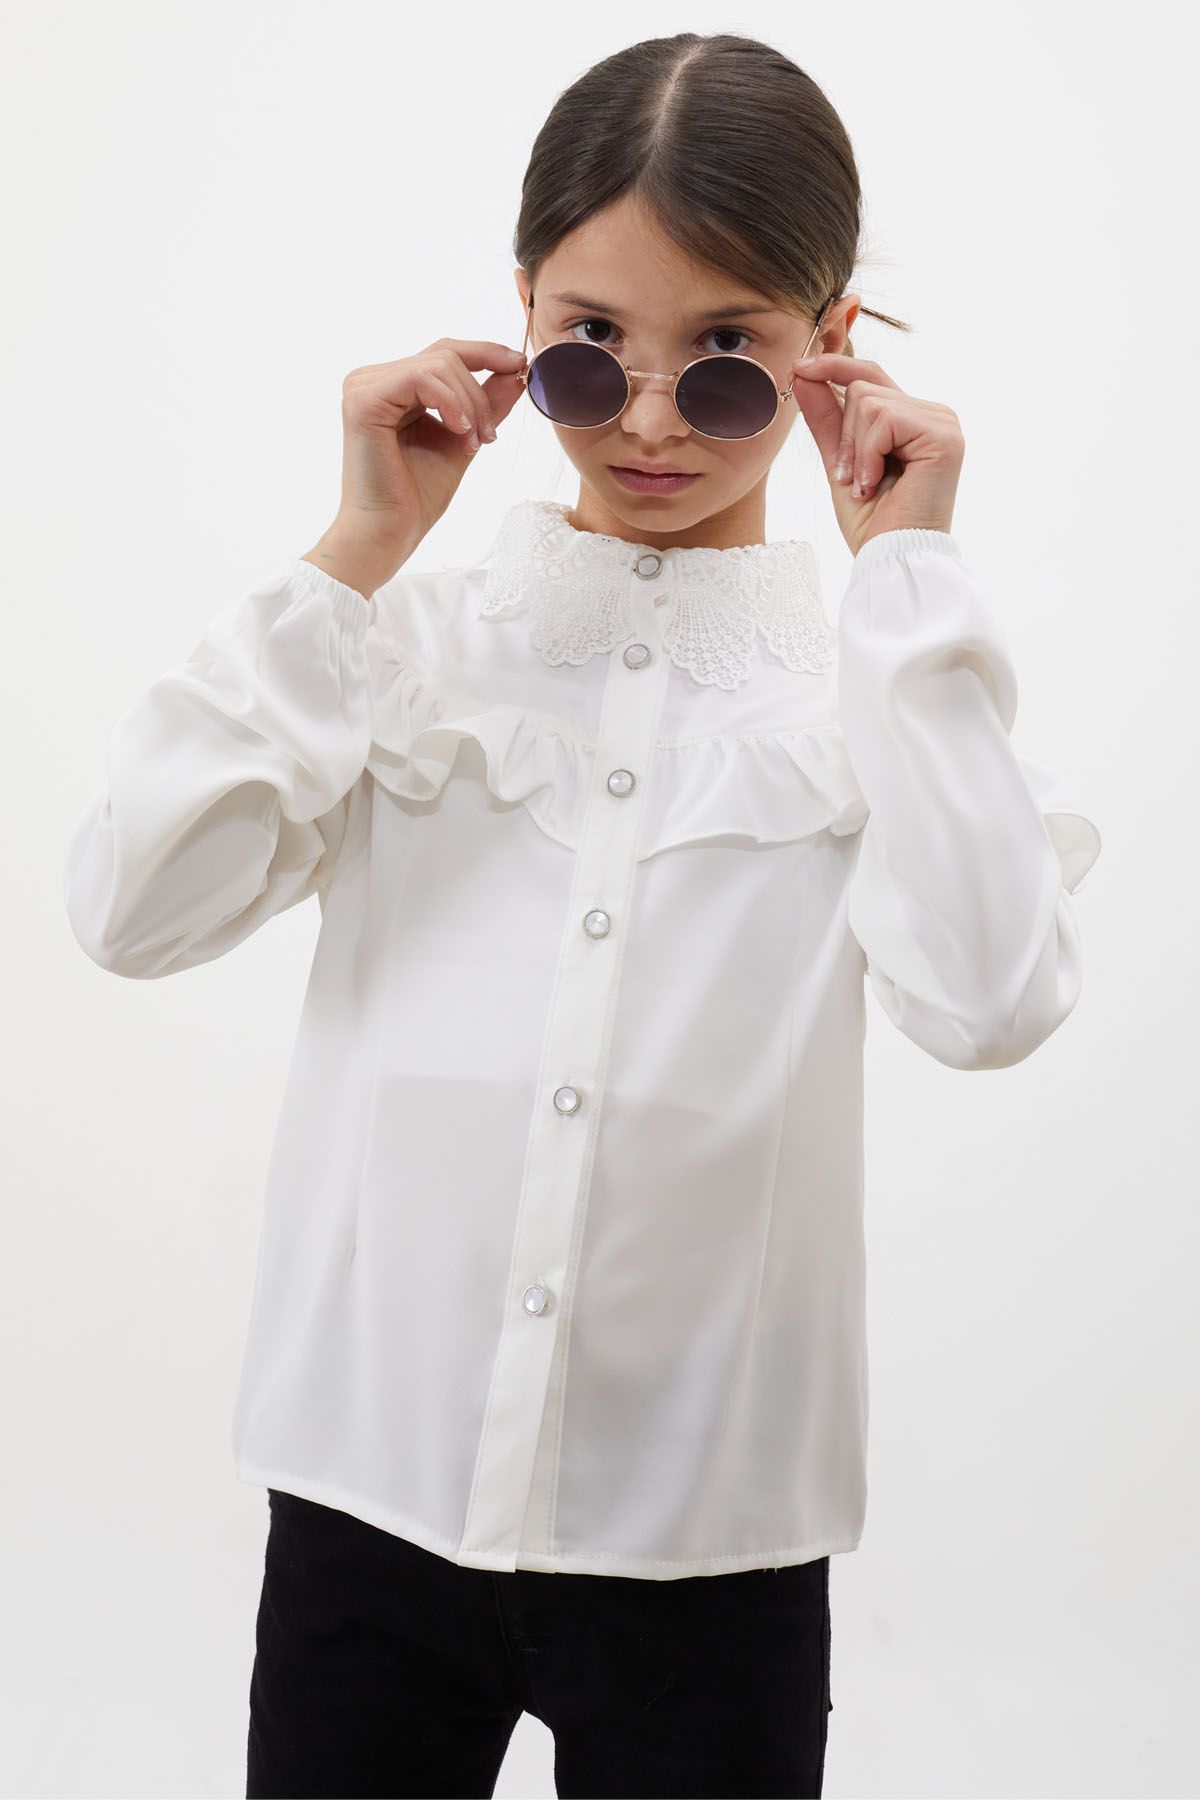 Cansın Mini Beyaz Dantel Yakalı Kız Çocuk Düğmeli Gömlek 18455